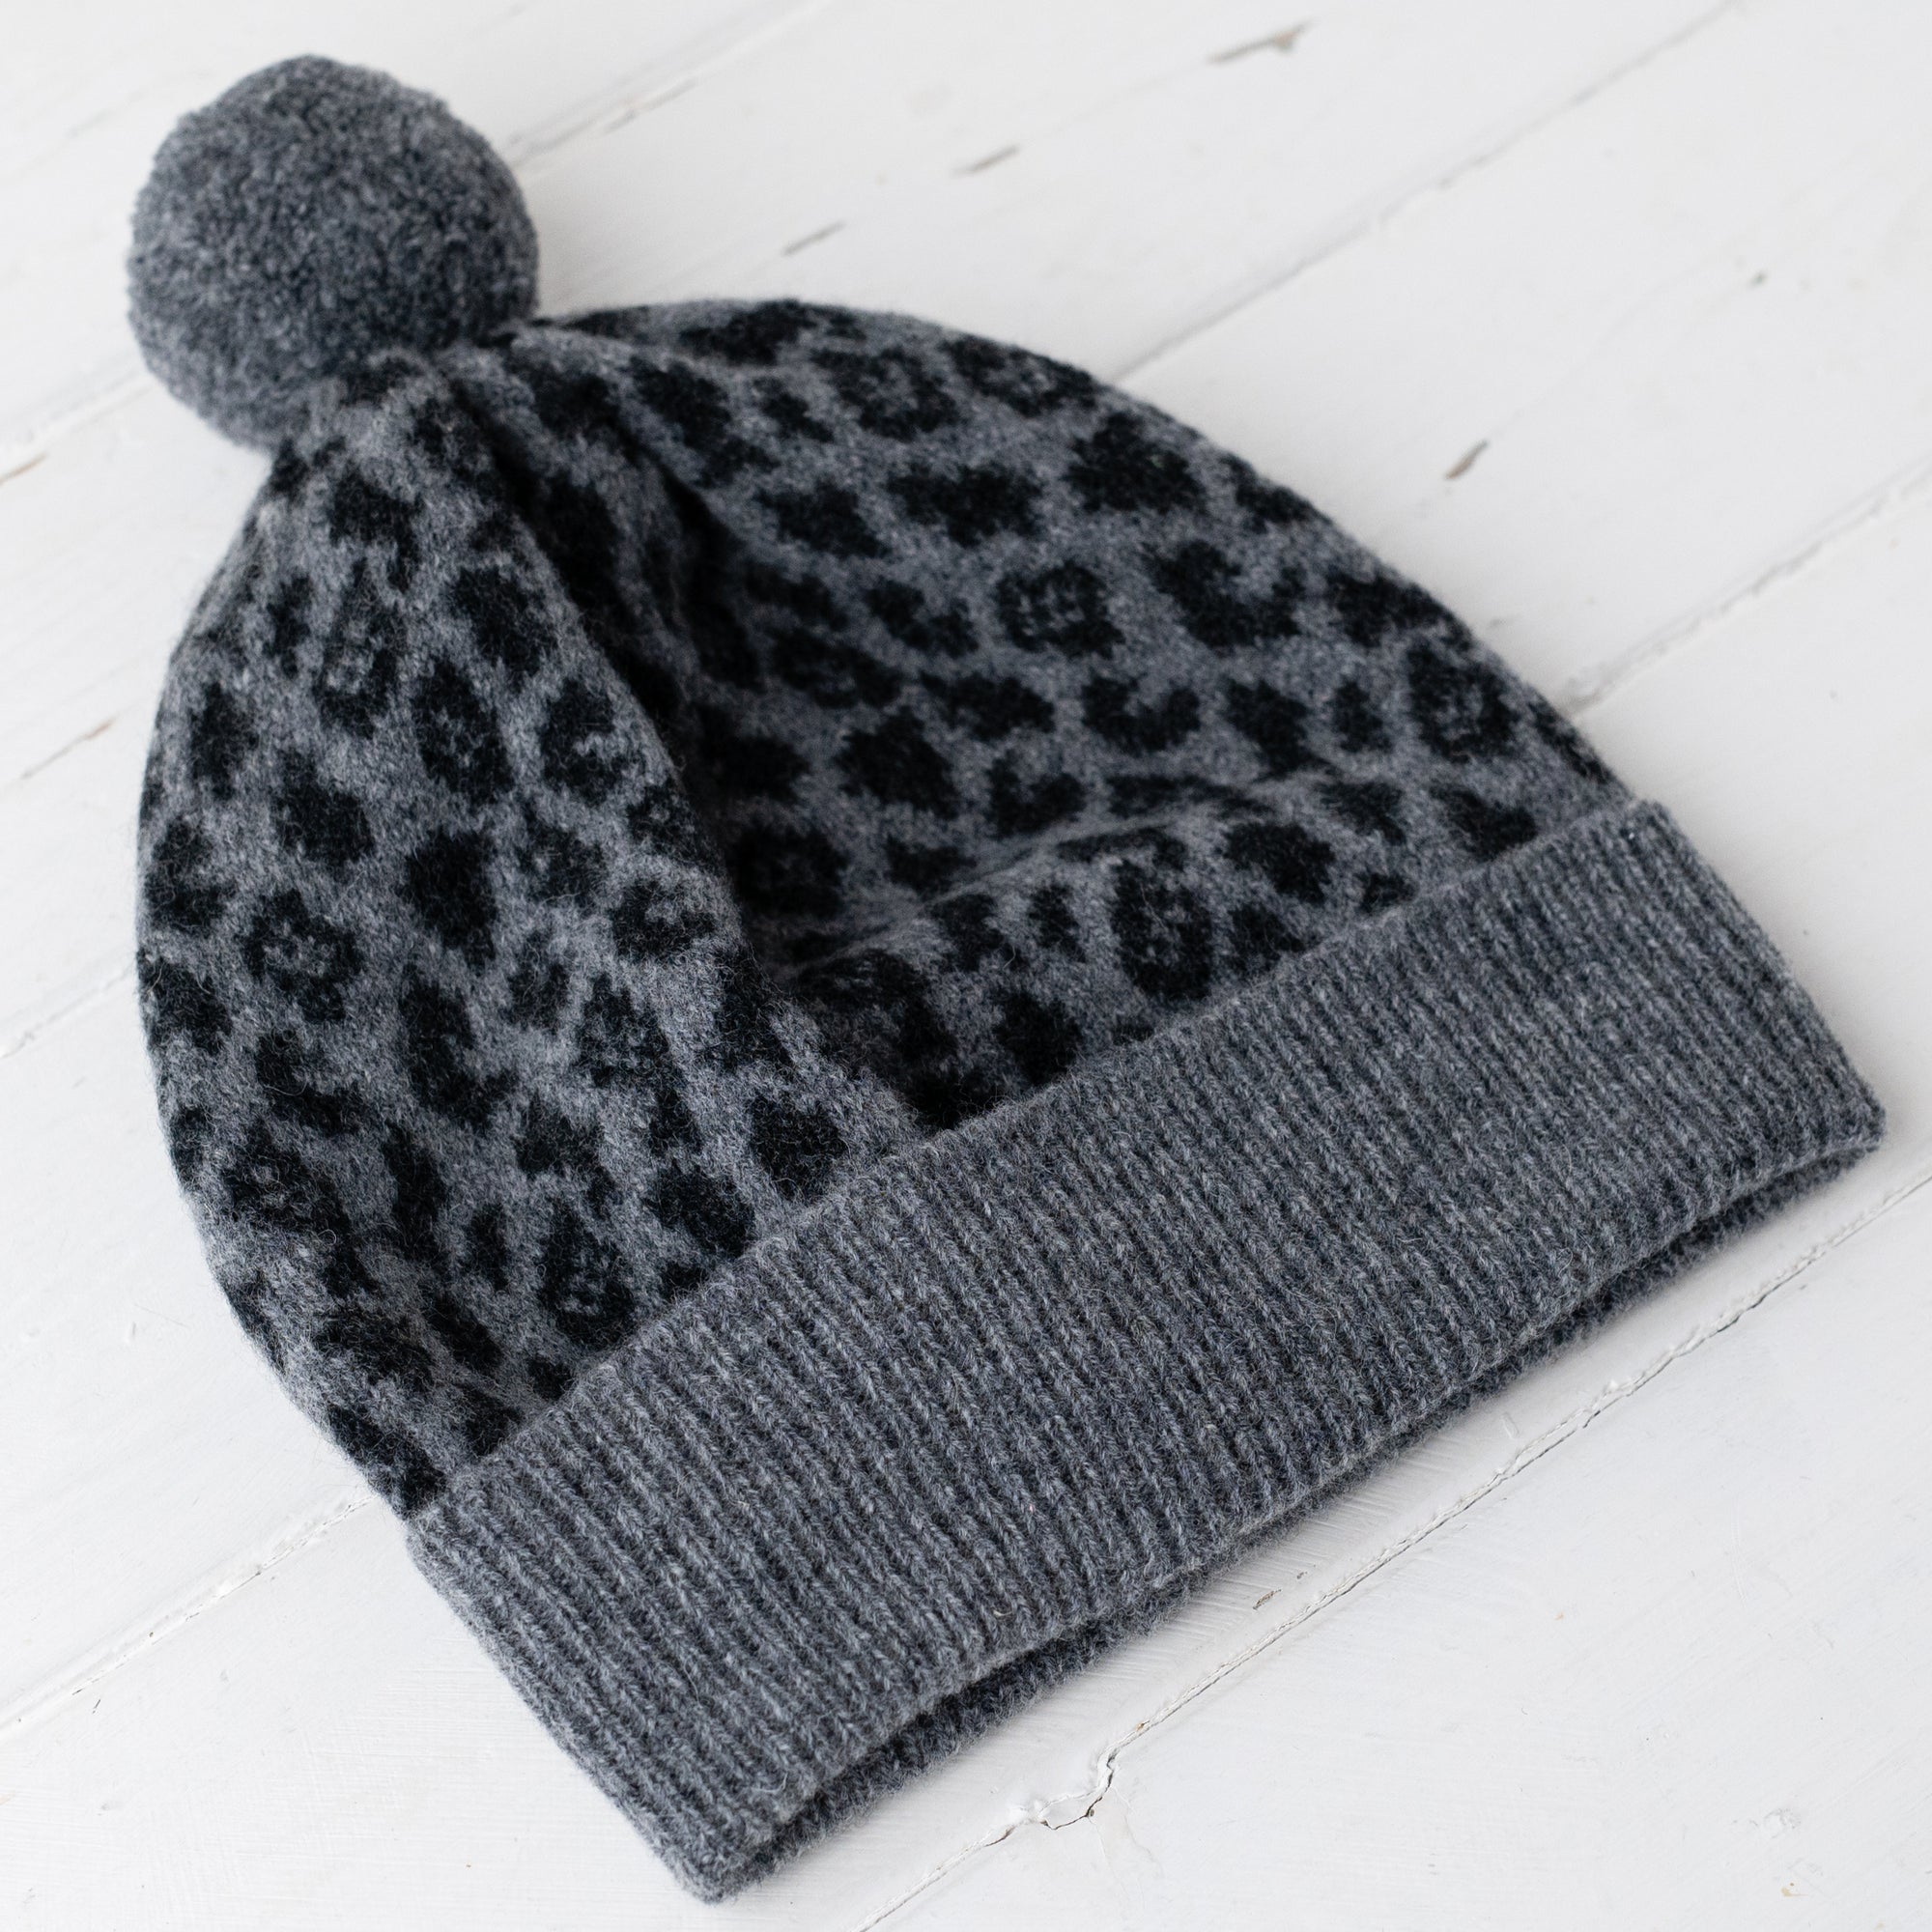 Leopard pom pom hat - grey